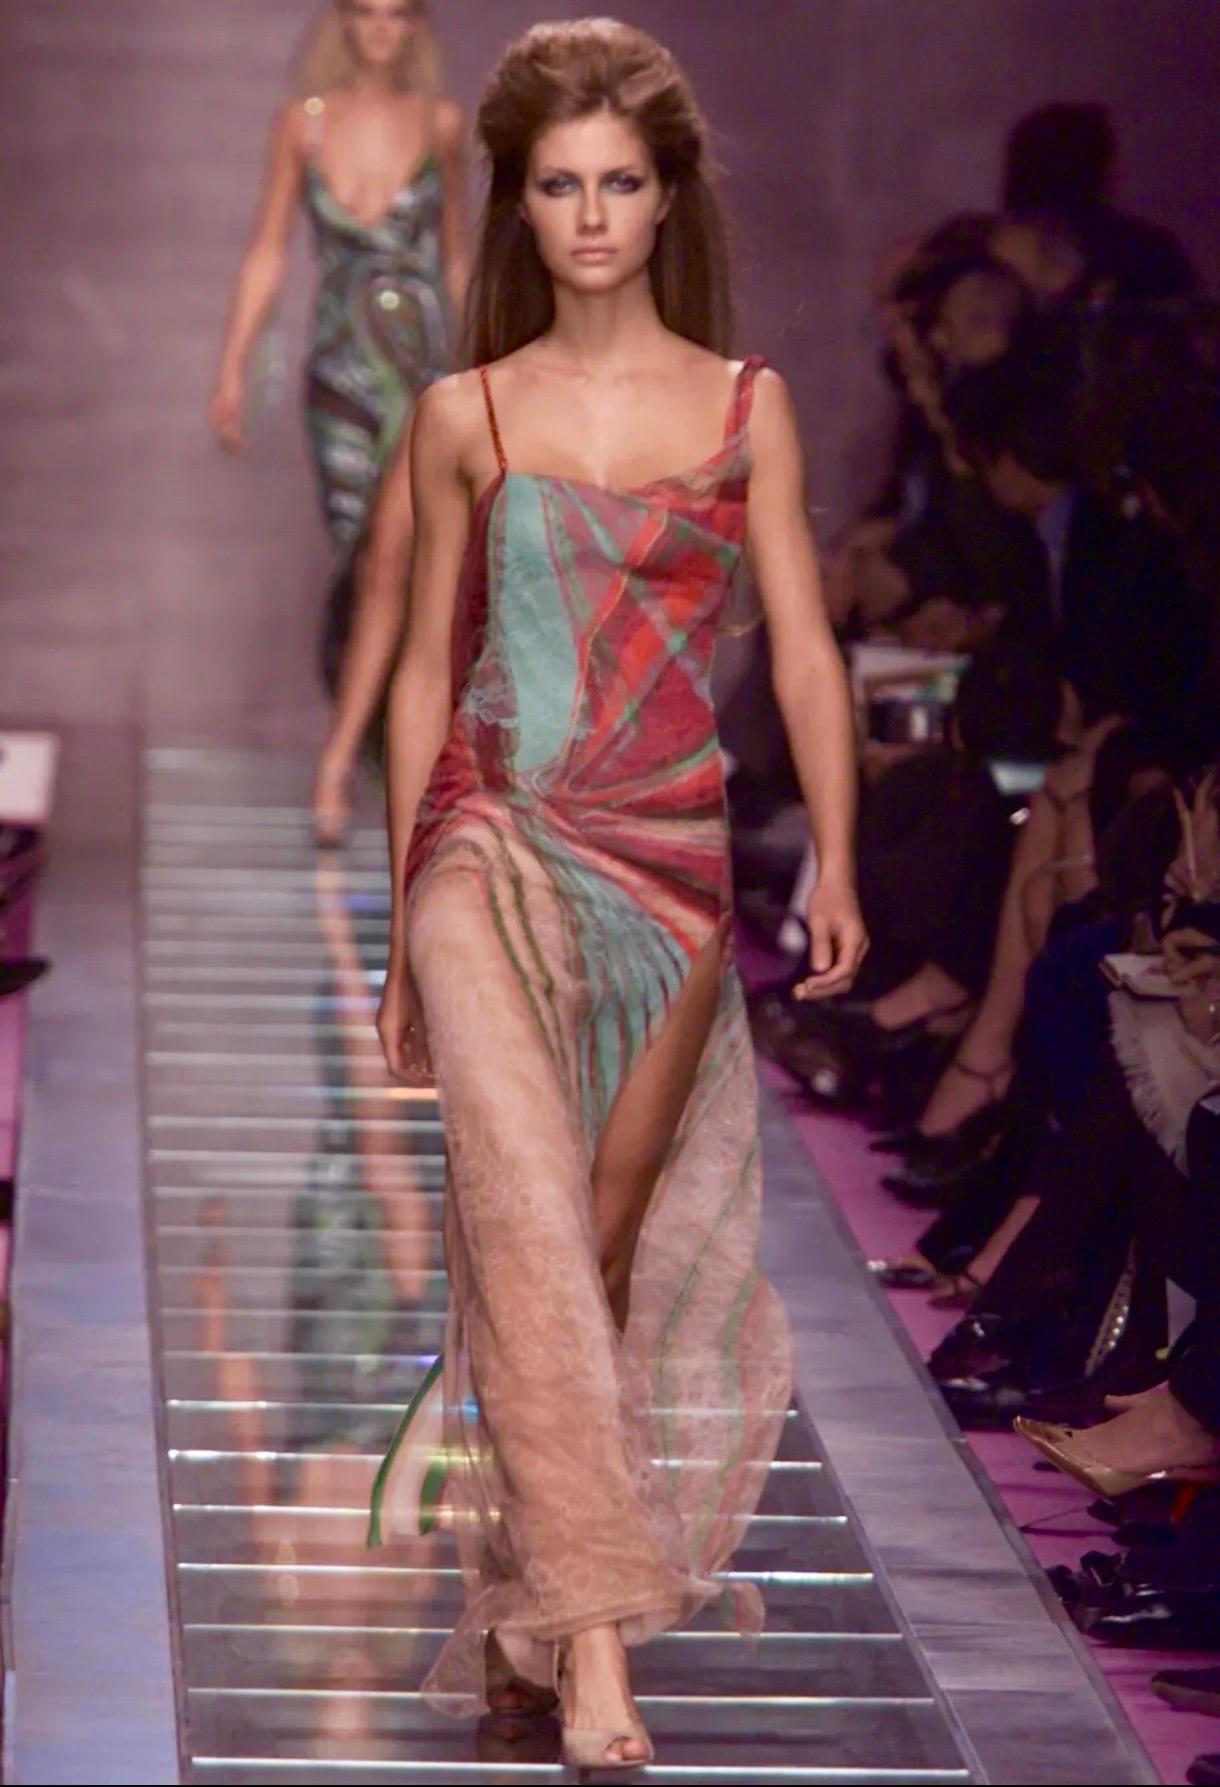 Une superbe robe longue de la collection Versace Automne 2000, telle qu'elle a été présentée sur le podium.

Base en mousseline de soie imprimée avec une couche de dentelle imprimée sur le dessus pour créer plus de texture et de mouvement à la